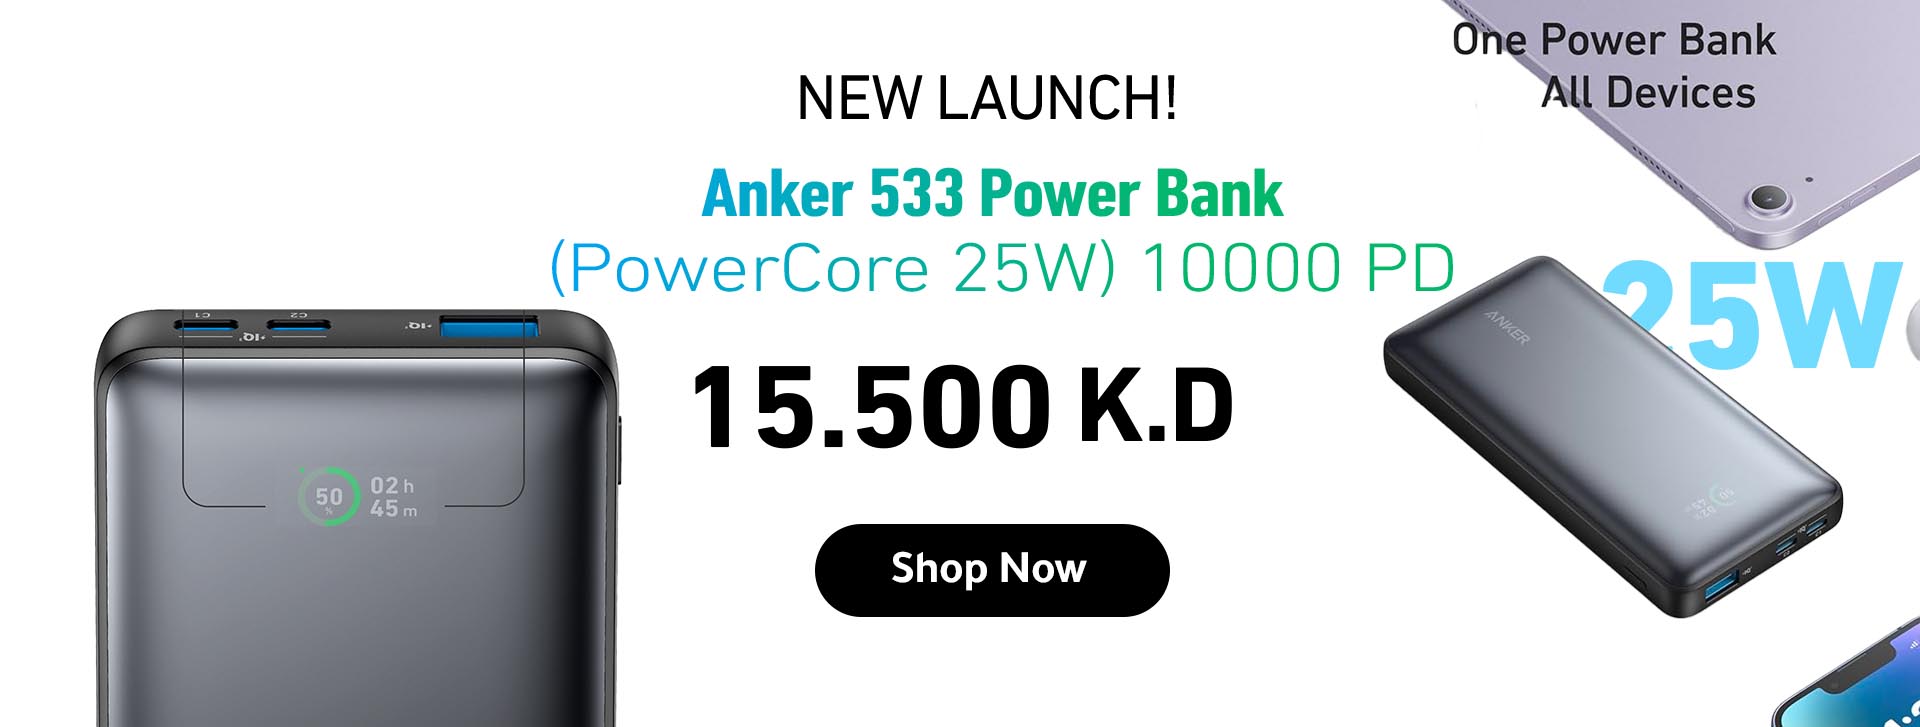 Anker 533 Power Bank (PowerCore 25W)